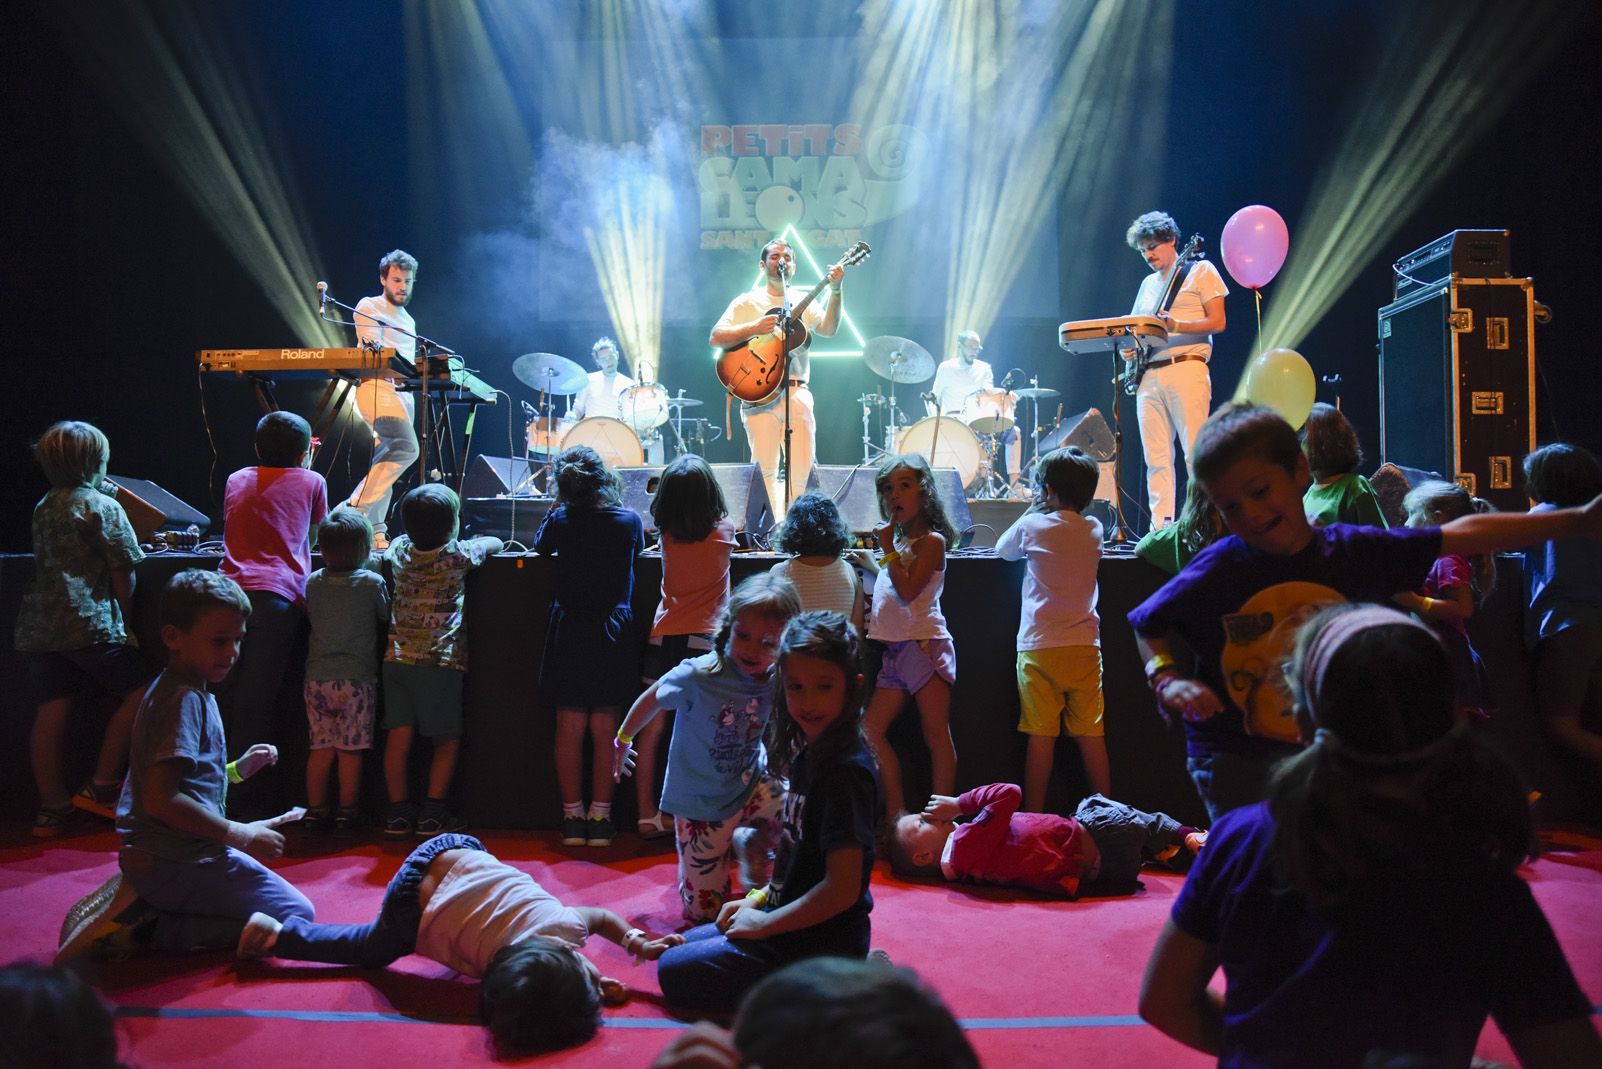 El Petit de Cal Eril al Festival de Música Petits Camaleons. Foto: Bernat Millet.